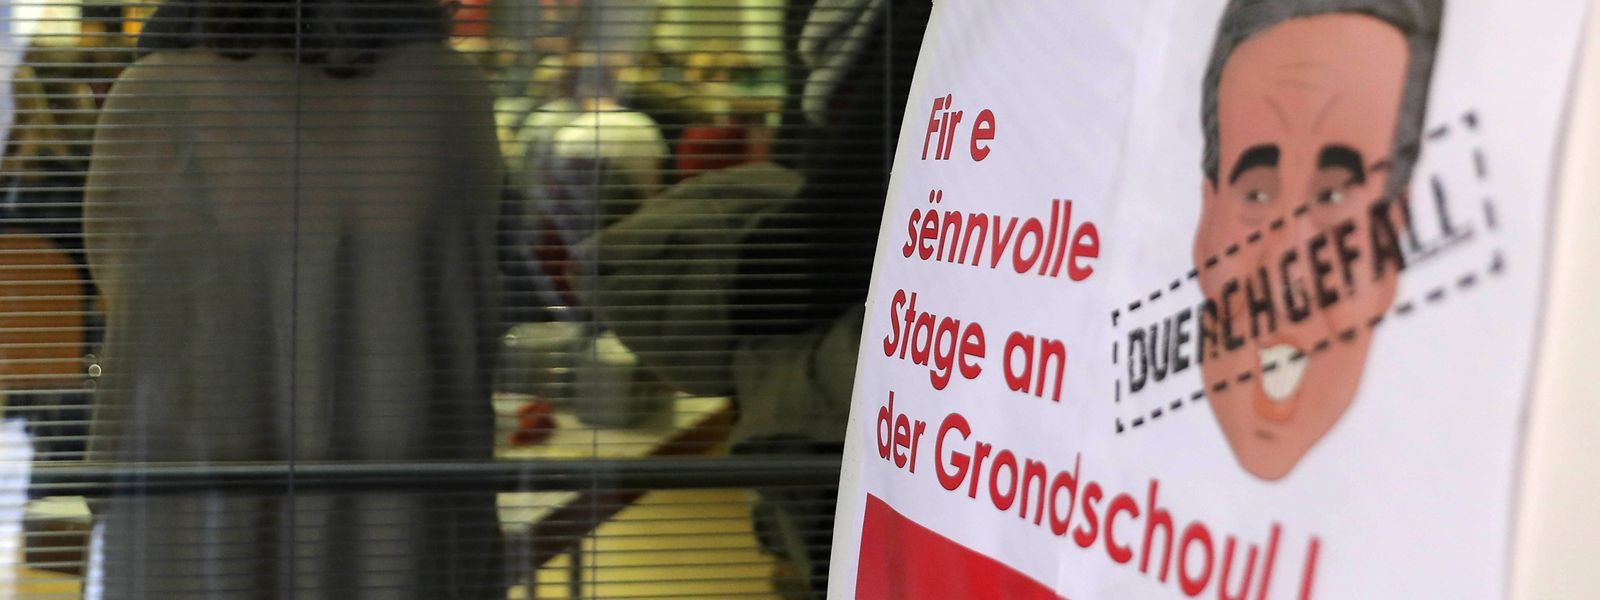 Der SEW hatte Mitte Januar zu einer Protestveranstaltung nach Bonneweg eingeladen, um für einen sinnvollen Stage zu protestieren.